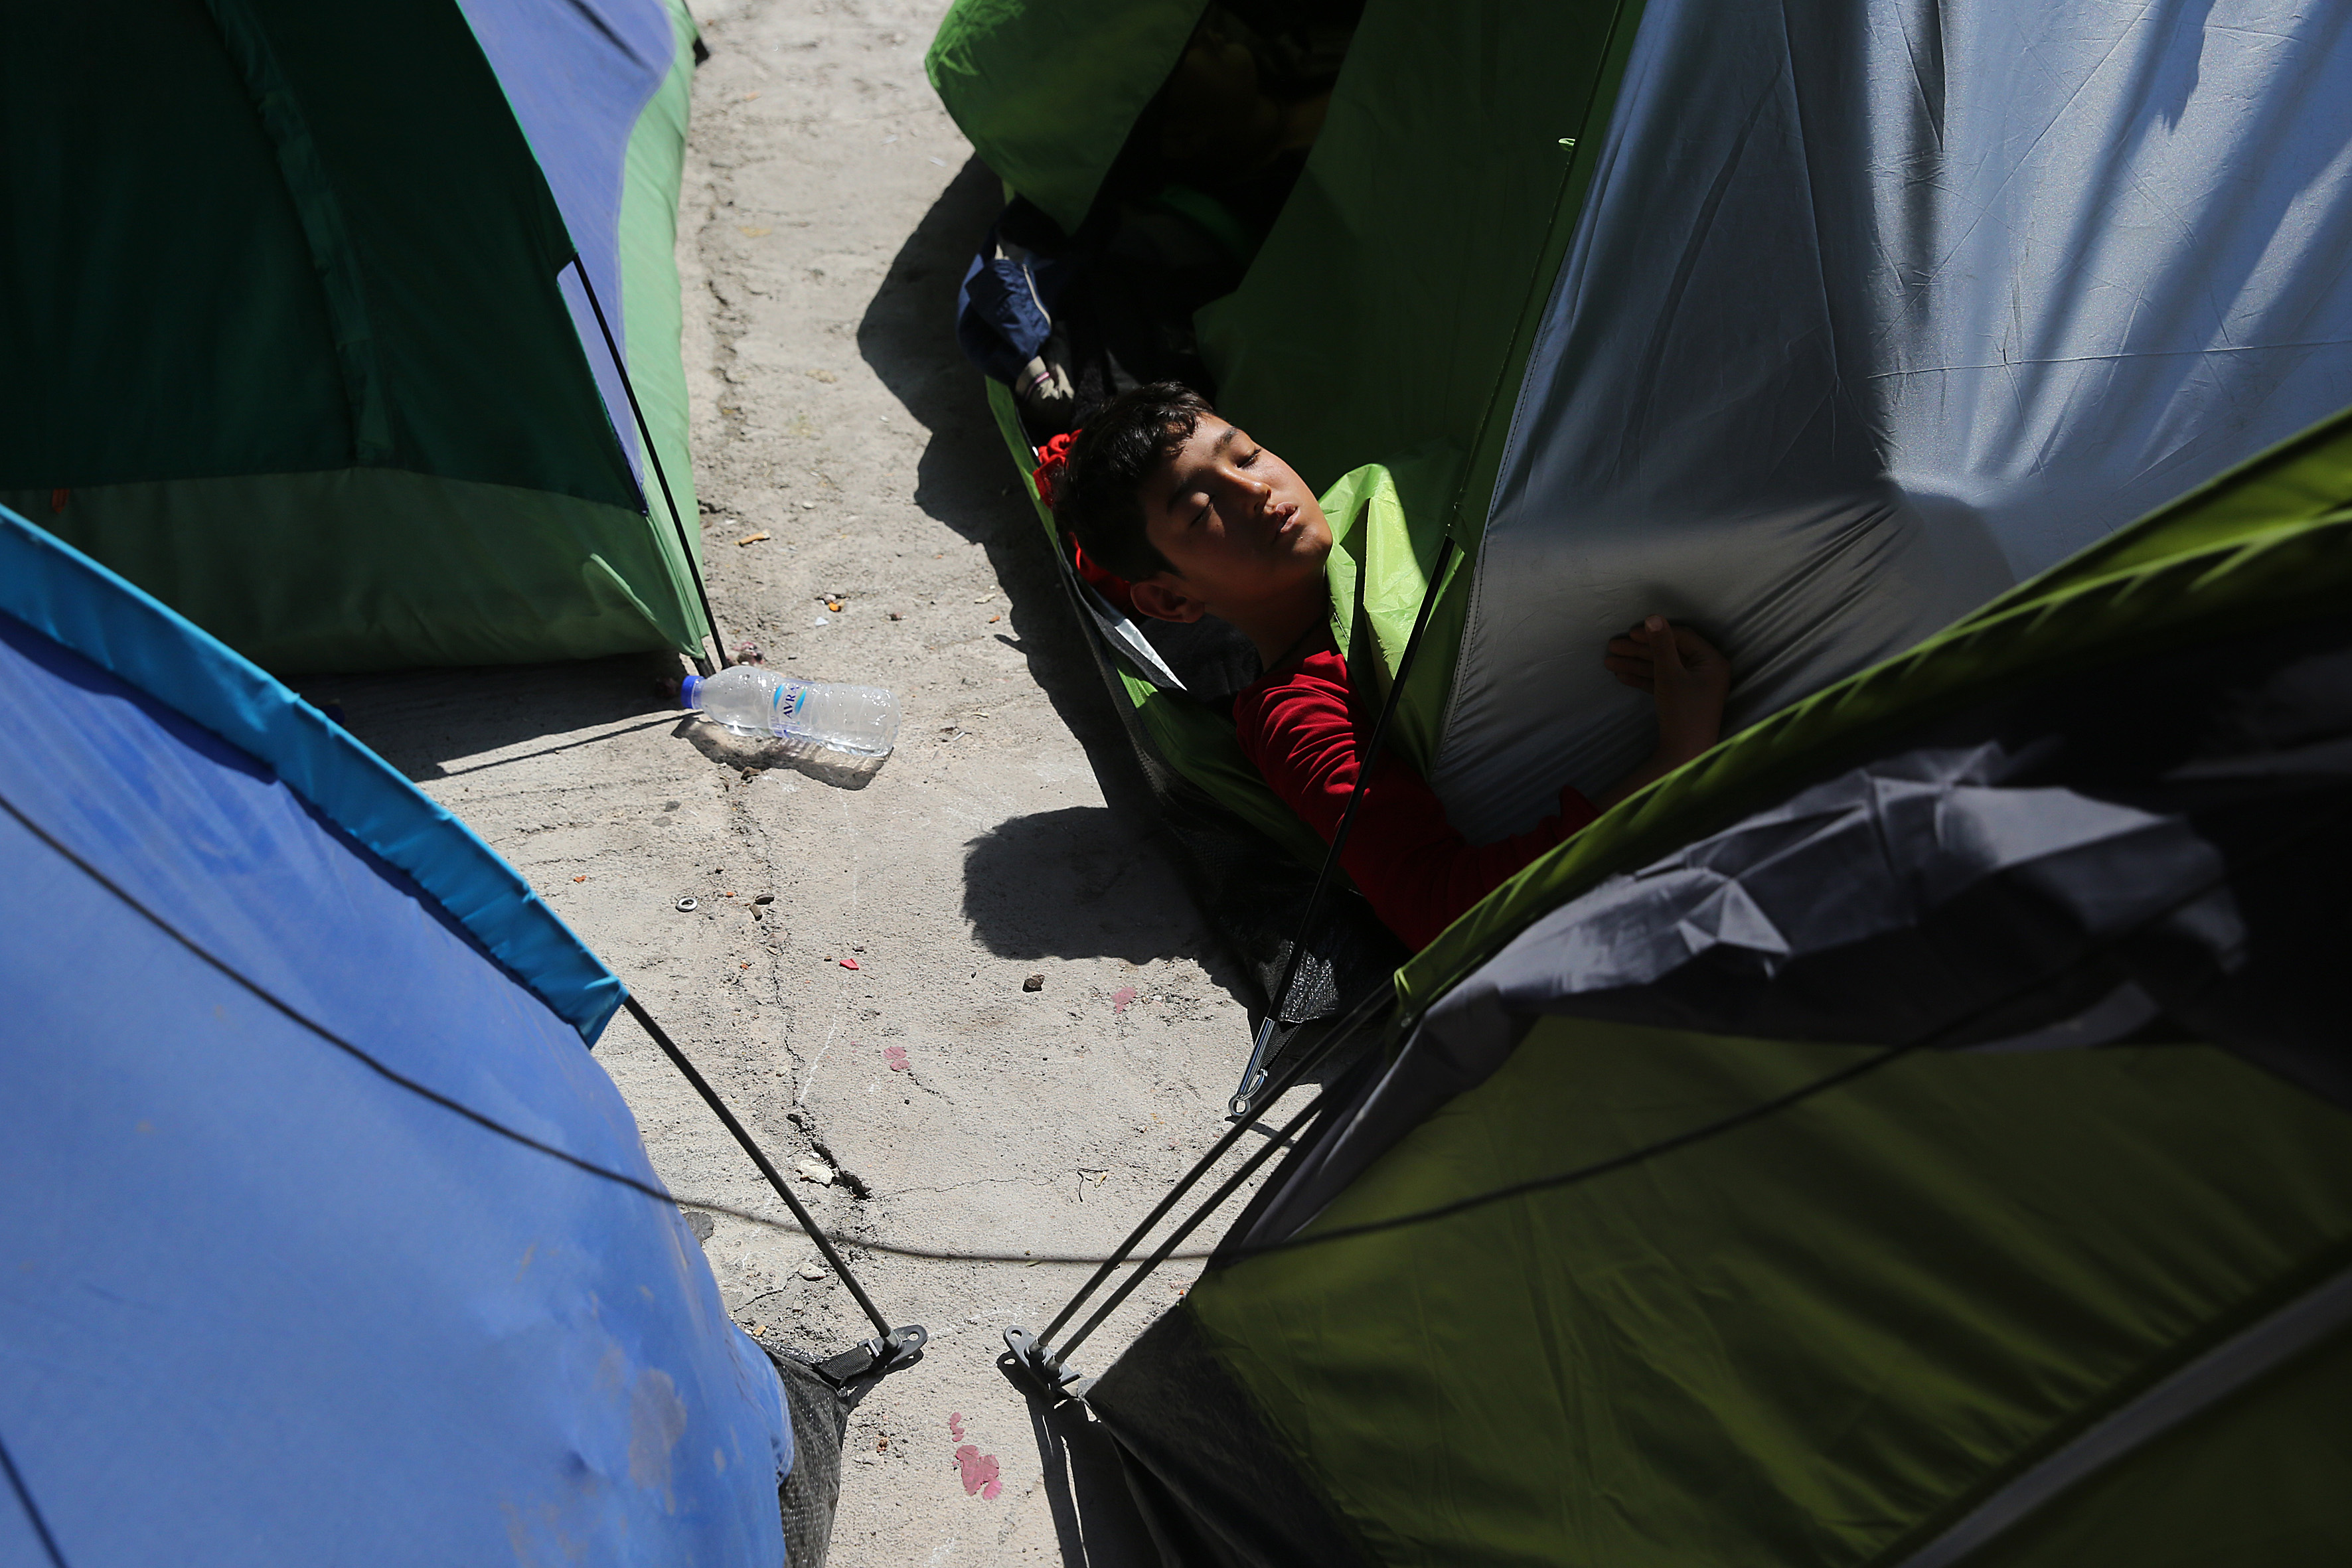 Εκτός κινδύνου ο 11χρονος πρόσφυγας που τραυματίστηκε στον Πειραιά